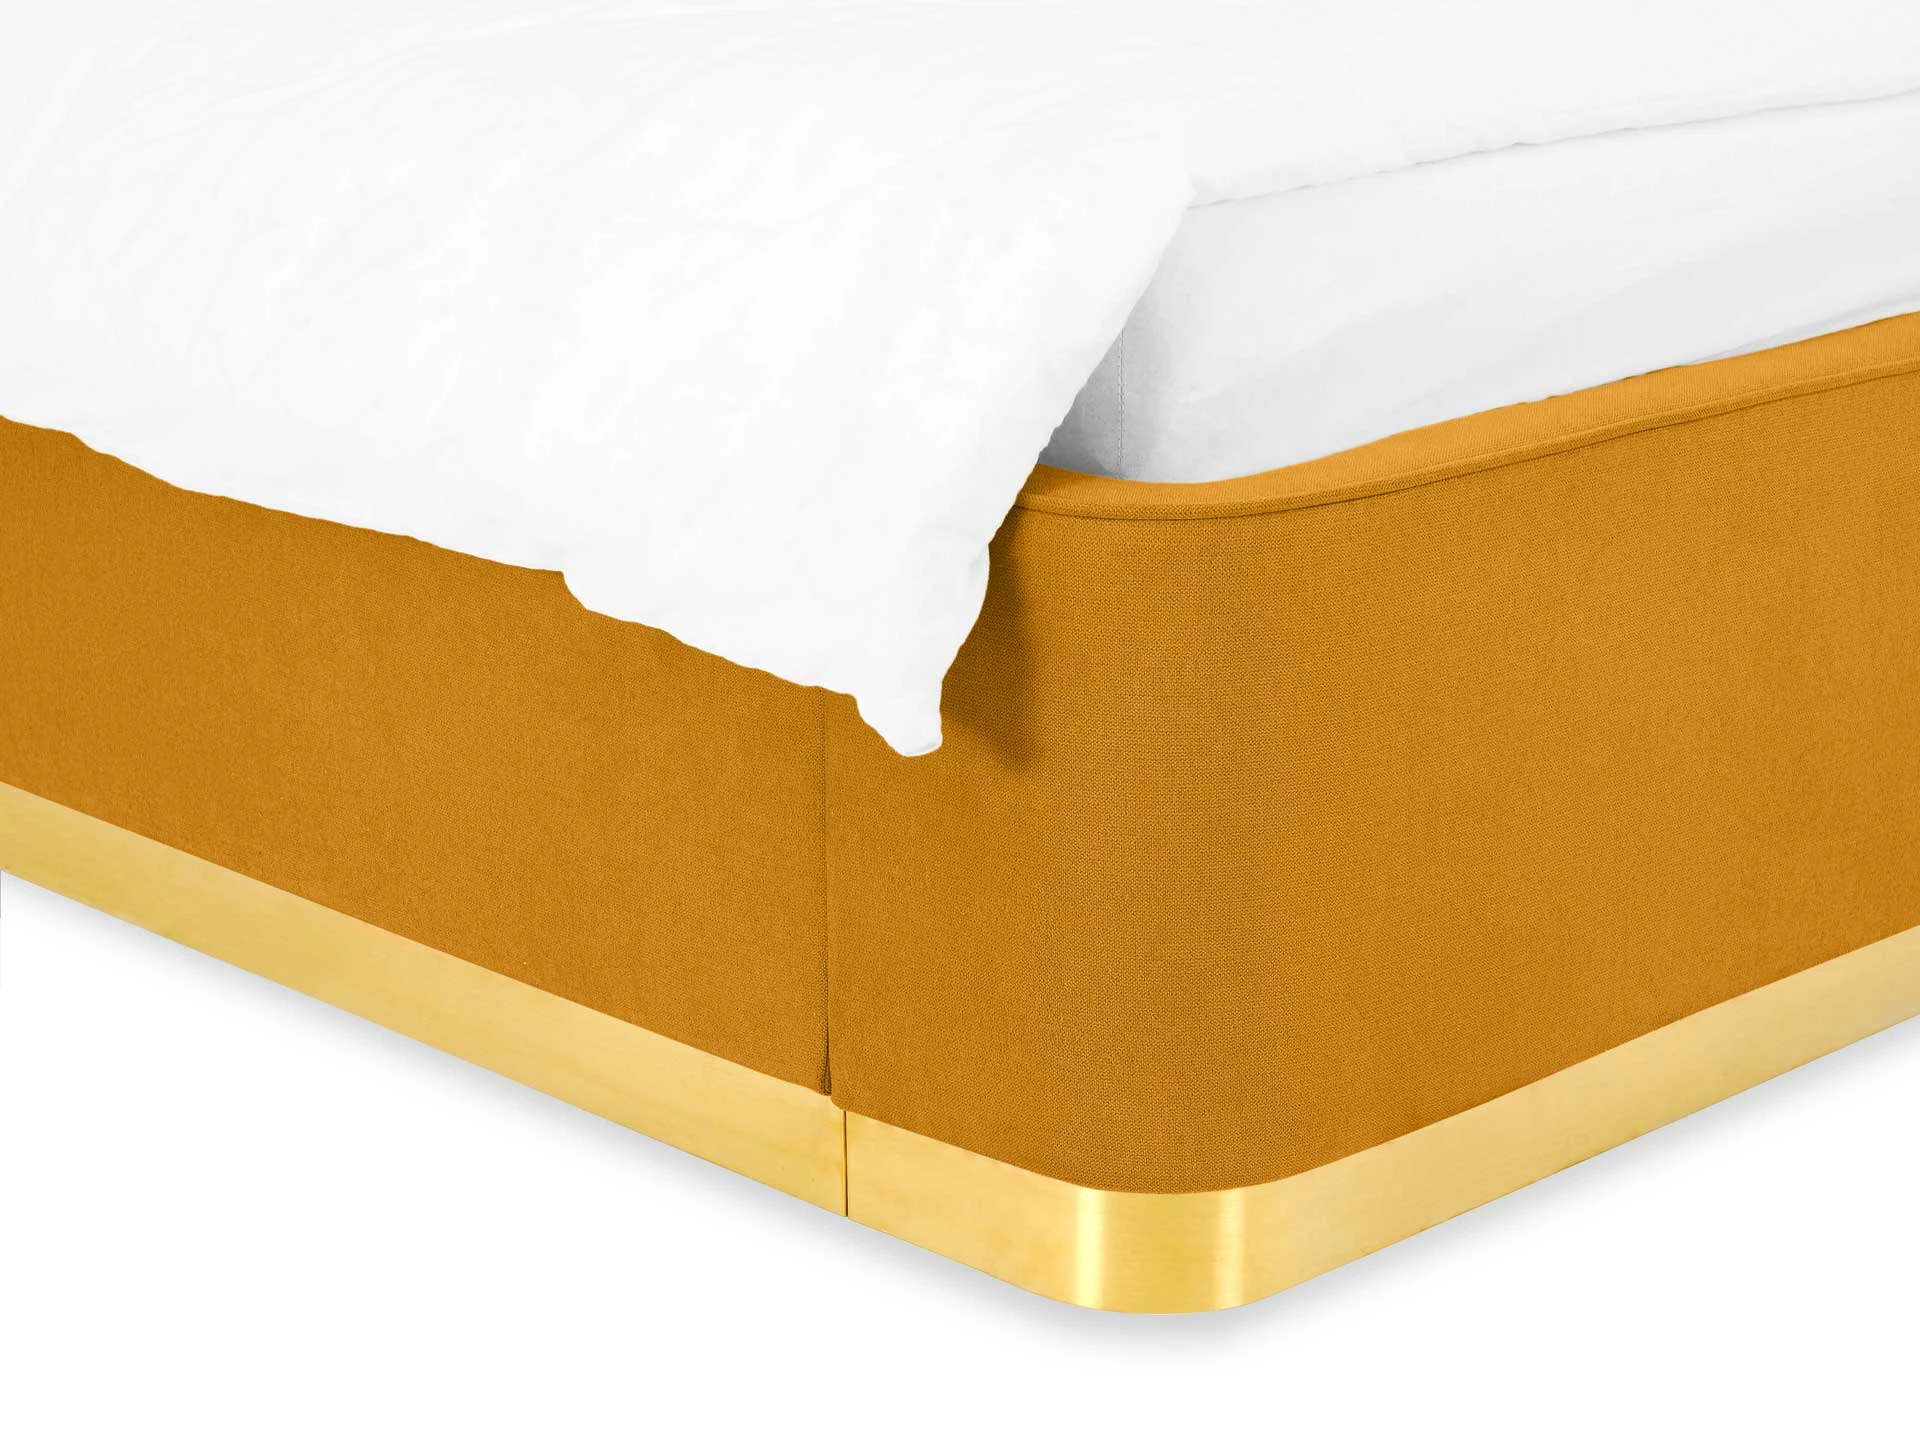 Кровать 160х200 с подъемным механизмом Vibe желтый 748490